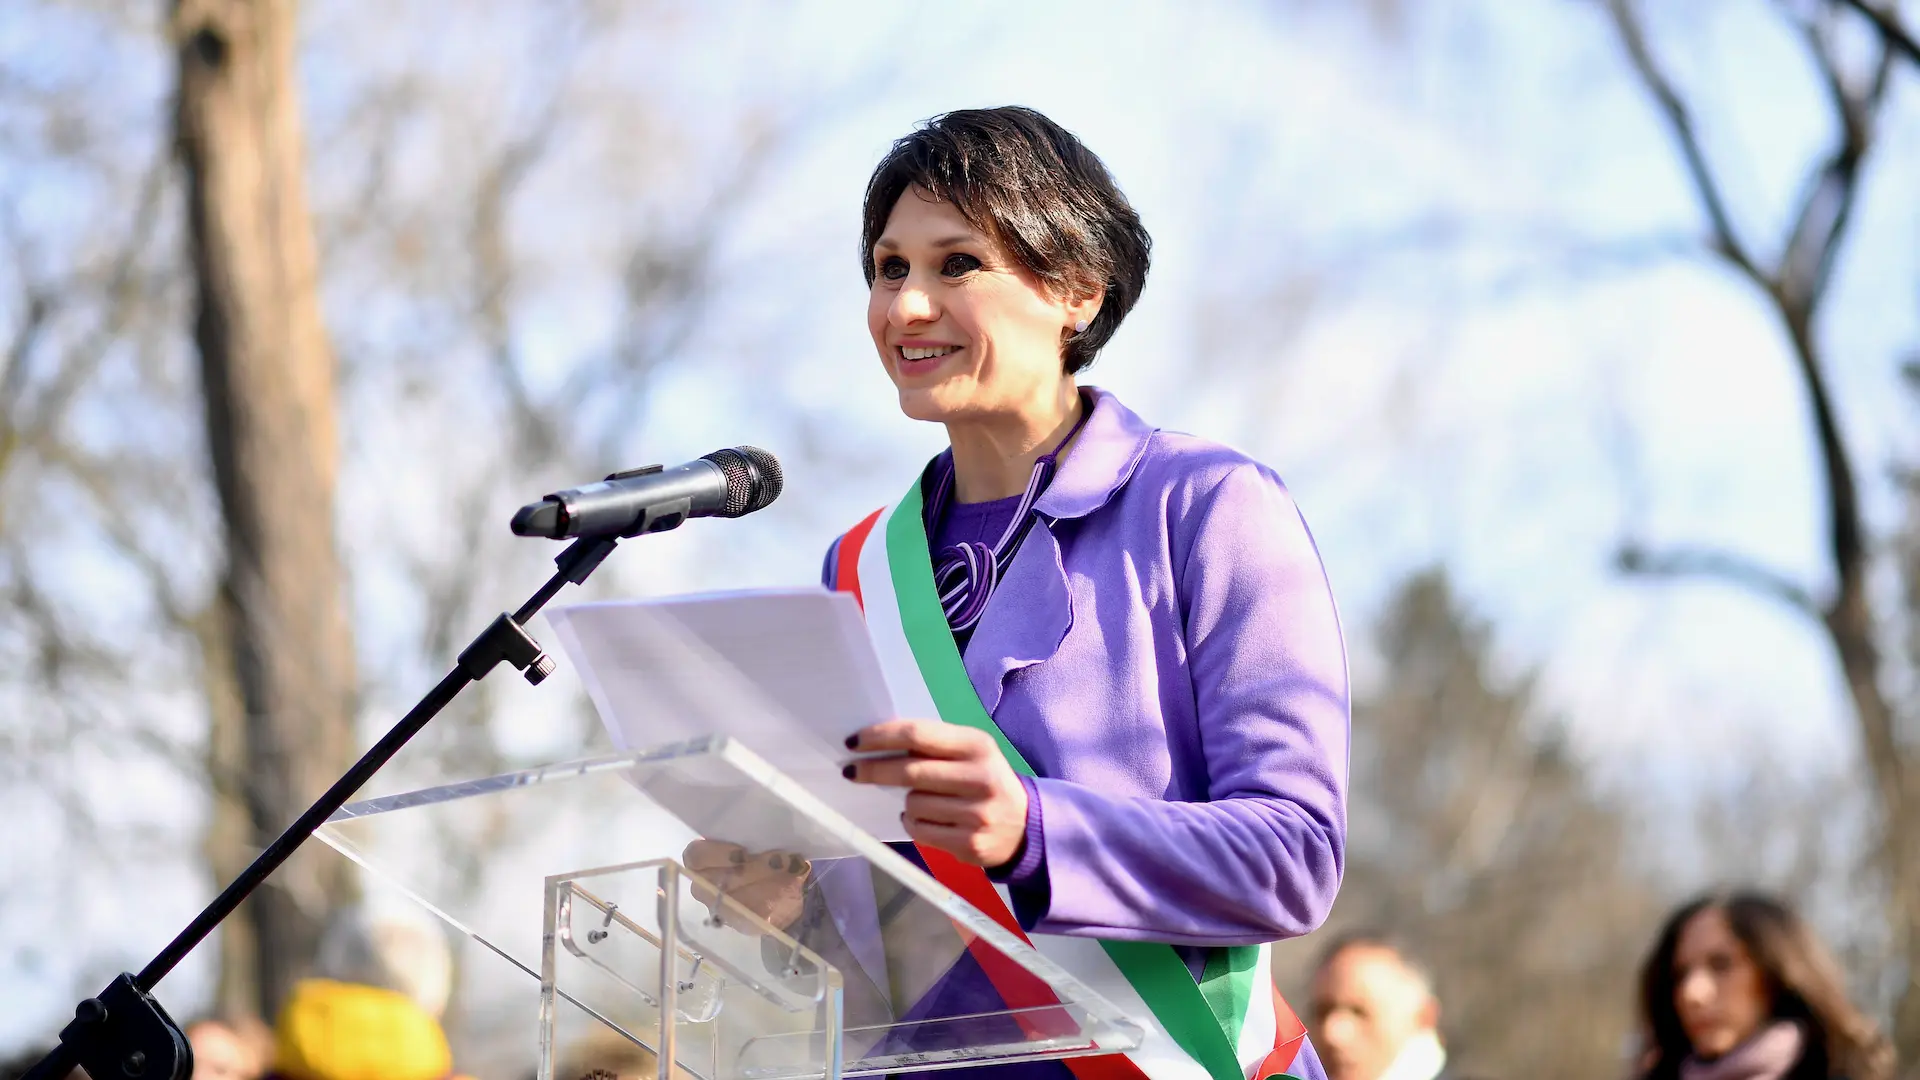 La Presidente del Consiglio comunale di Milano, Elena Buscemi